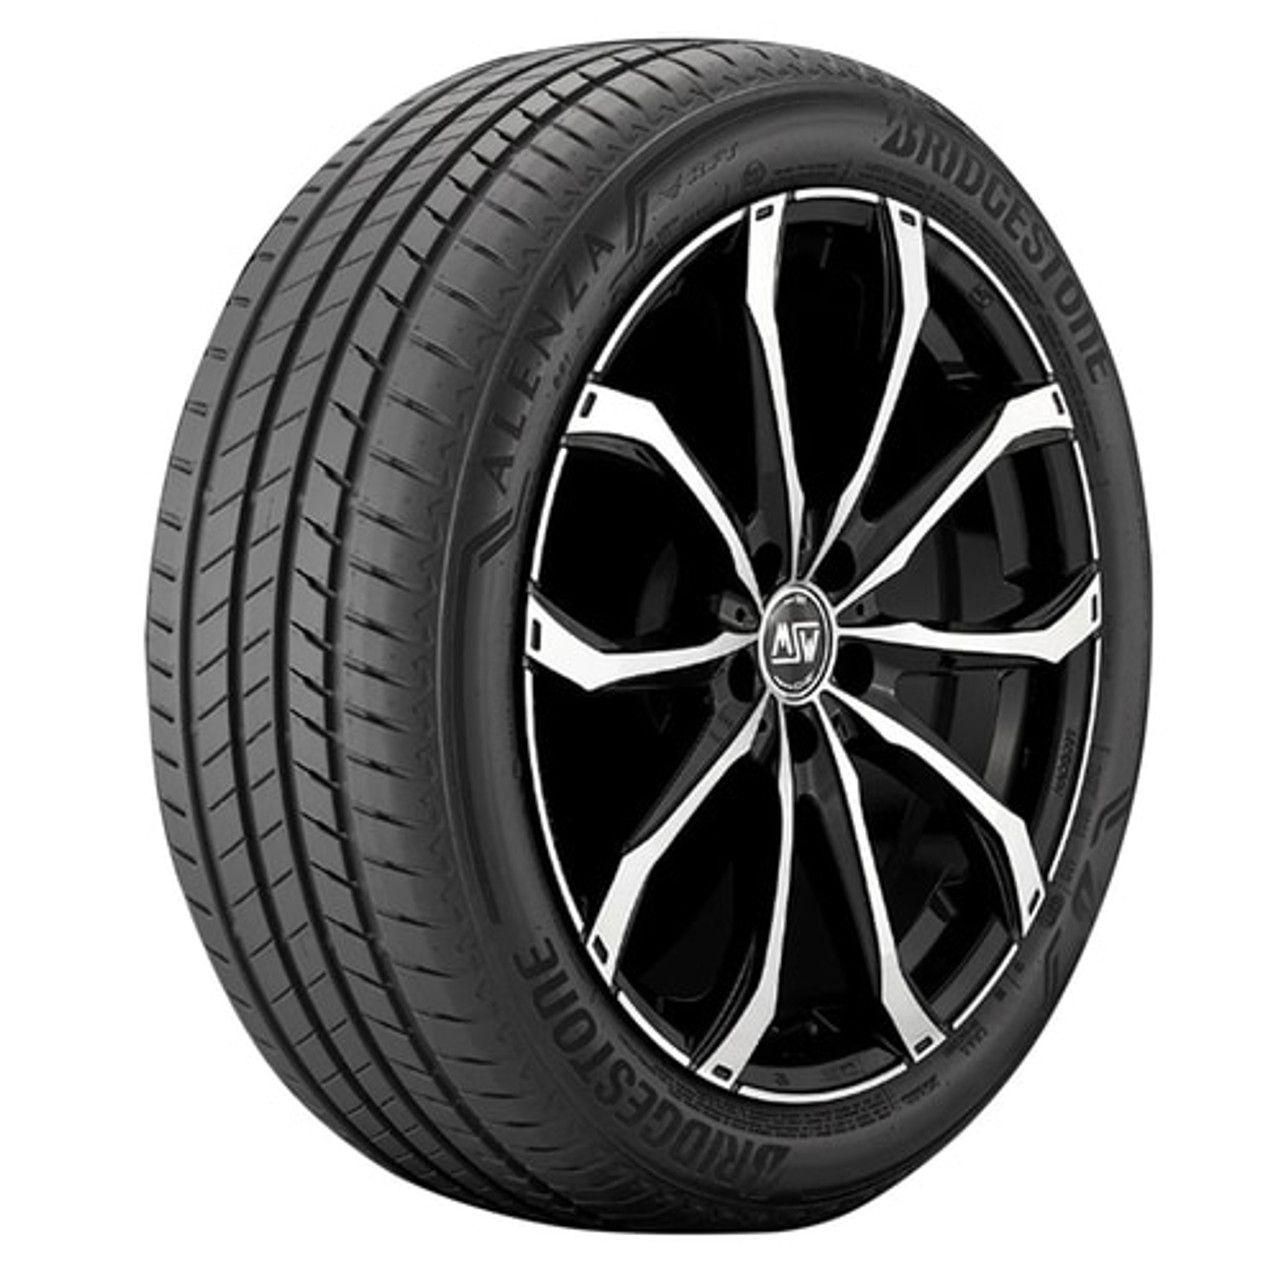 Bridgestone Alenza 001 Tire 255/55R18 W 109 300 A A BSW XL